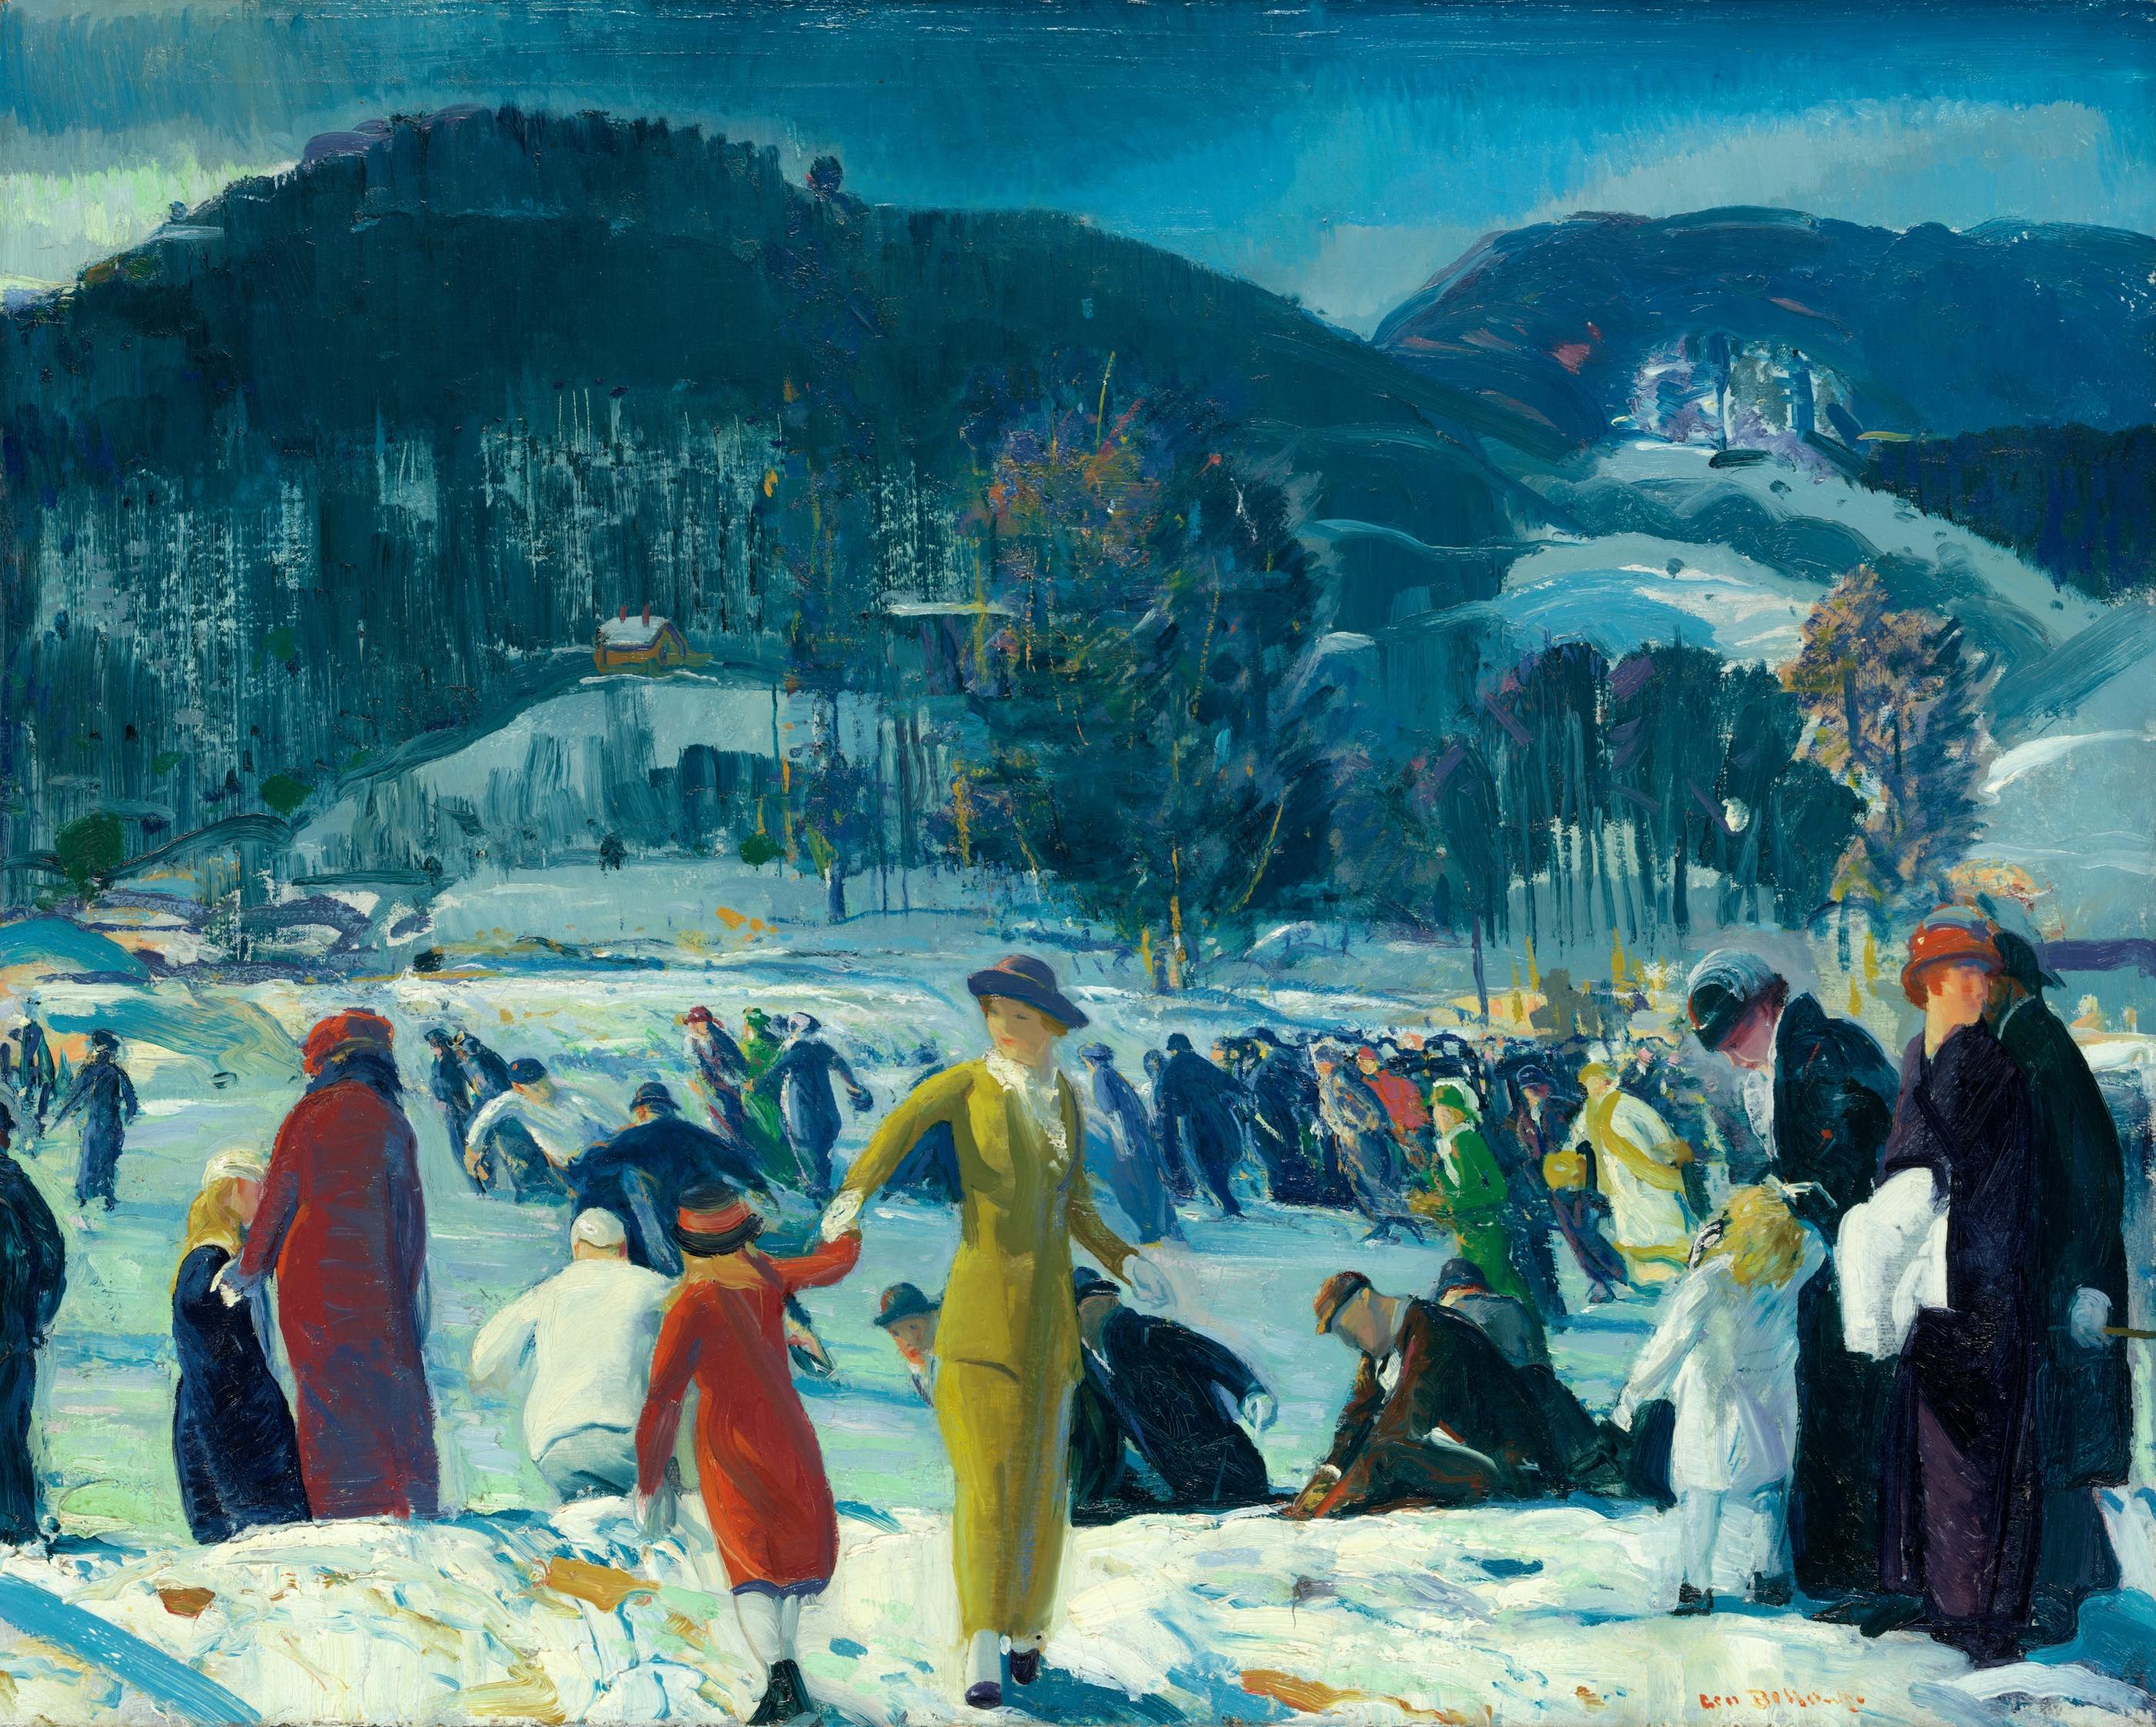 Miłość w zimie by George Bellows - 1914 r. - 81,6 × 101,6 cm 